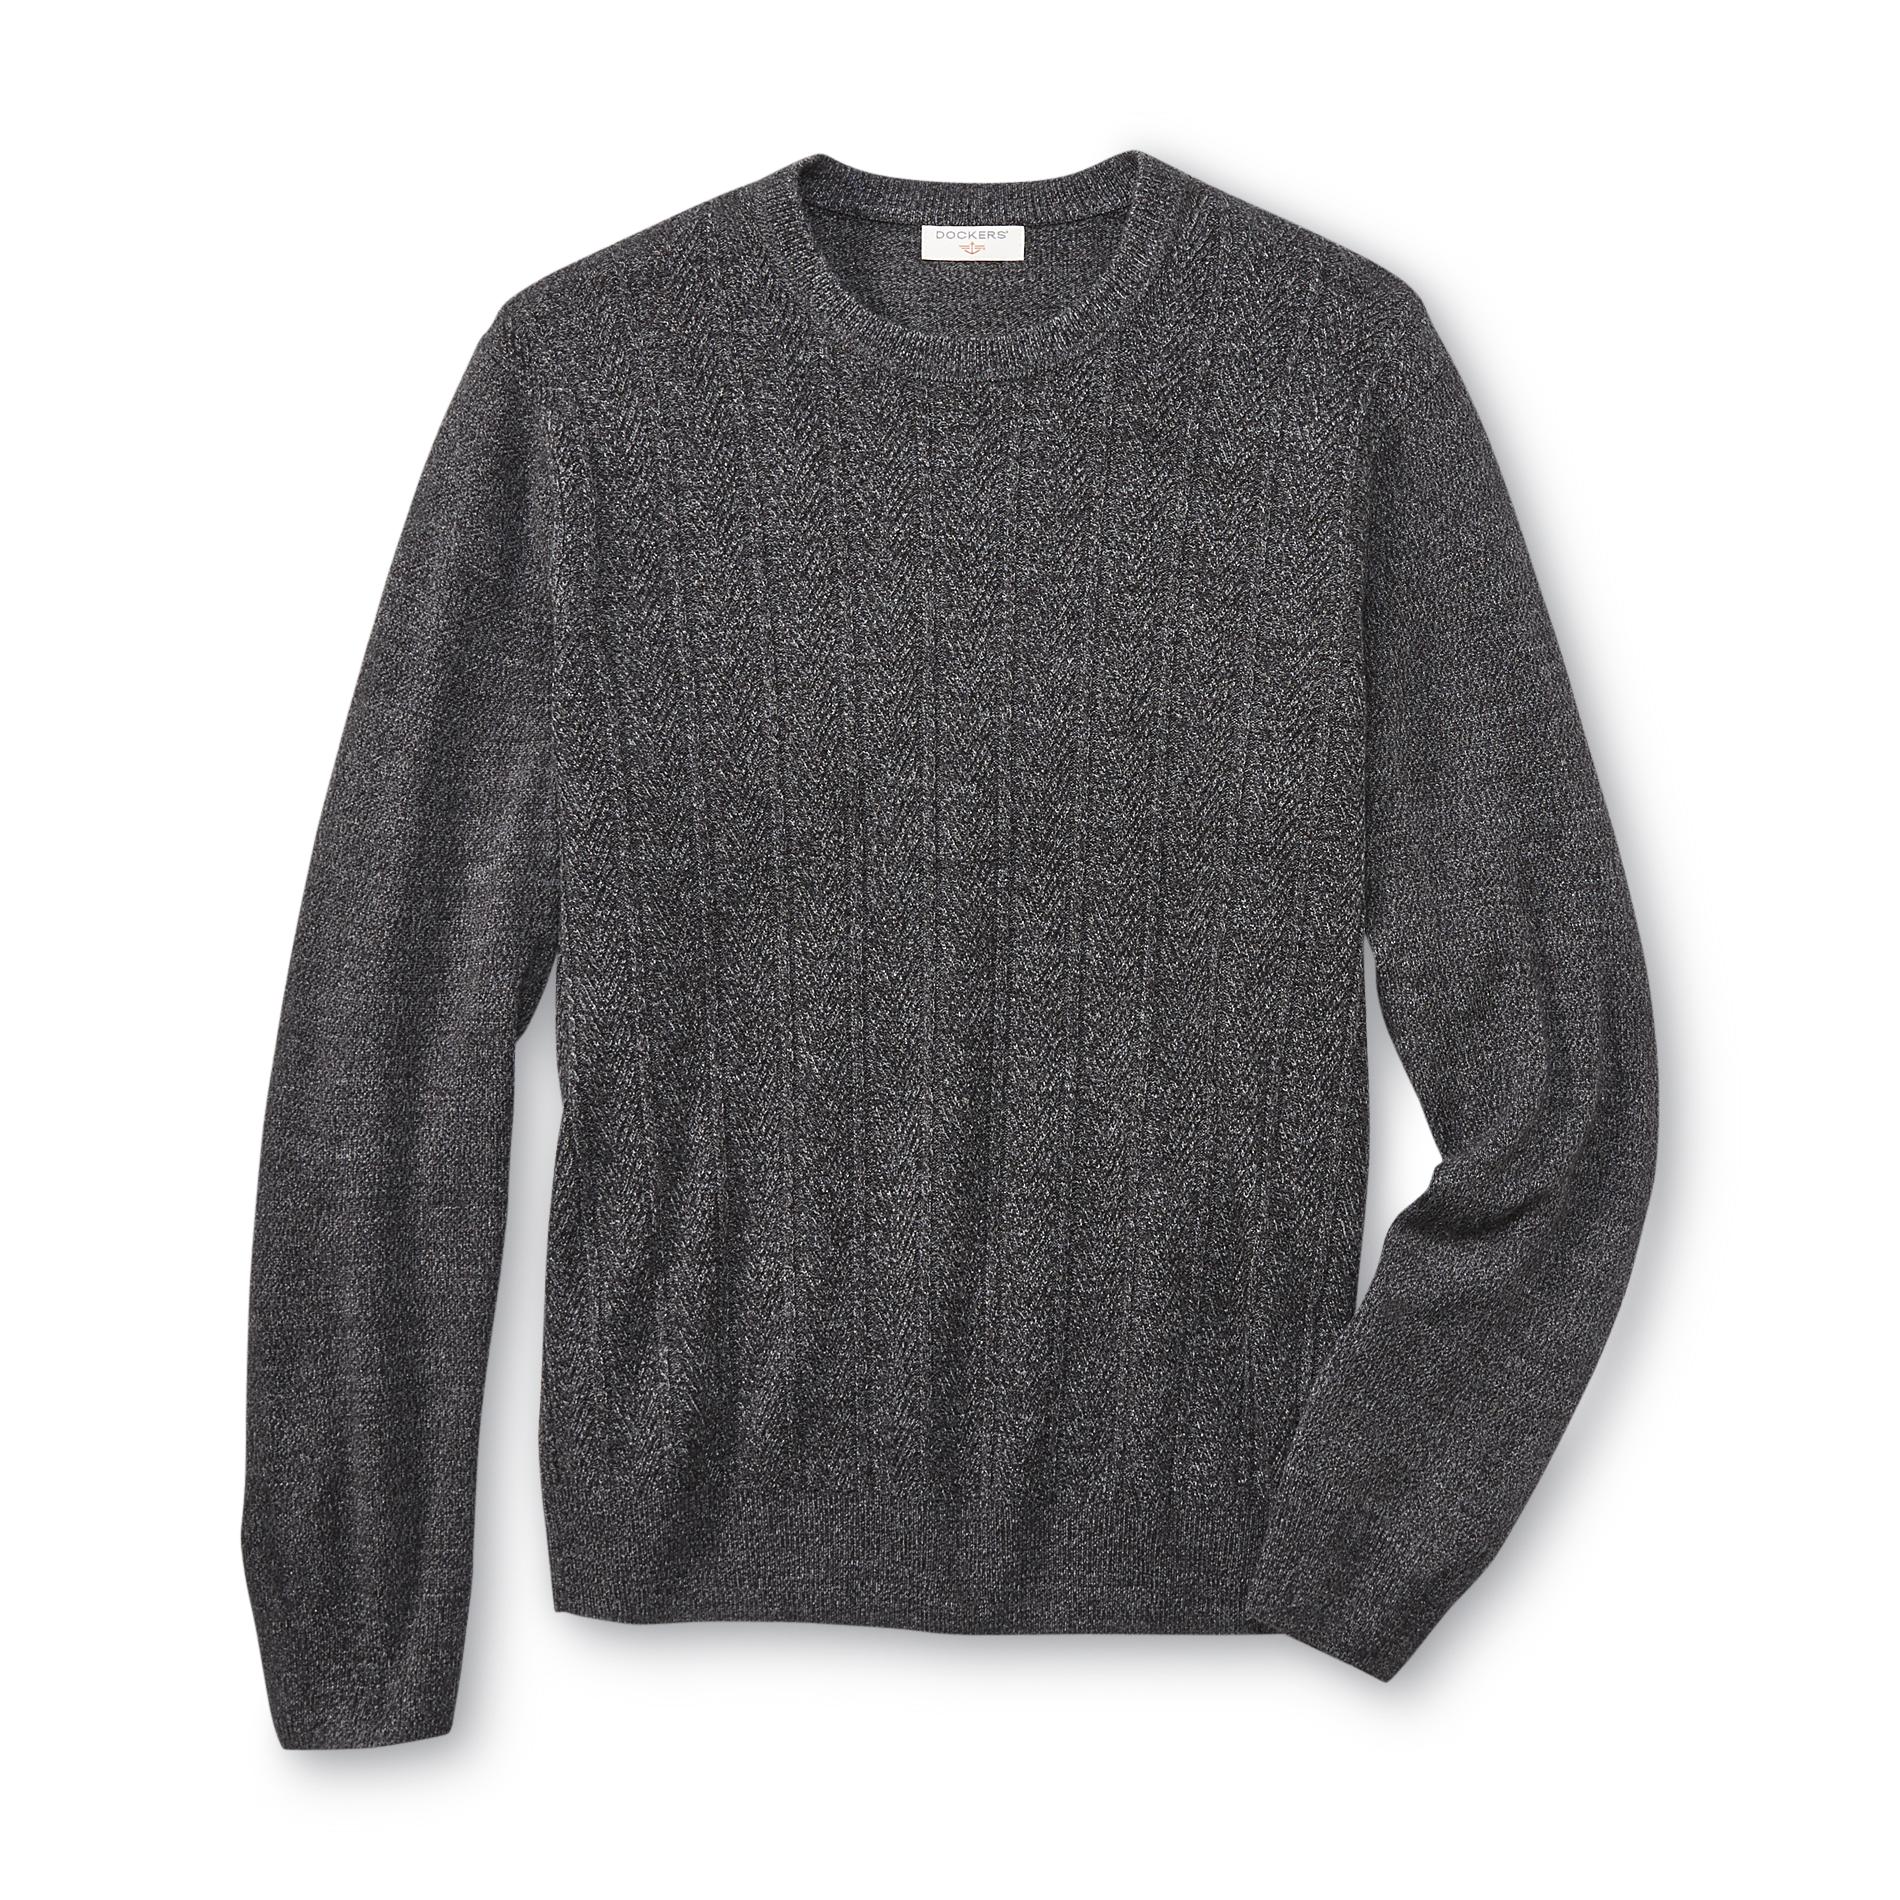 Dockers Men's Knit Sweater